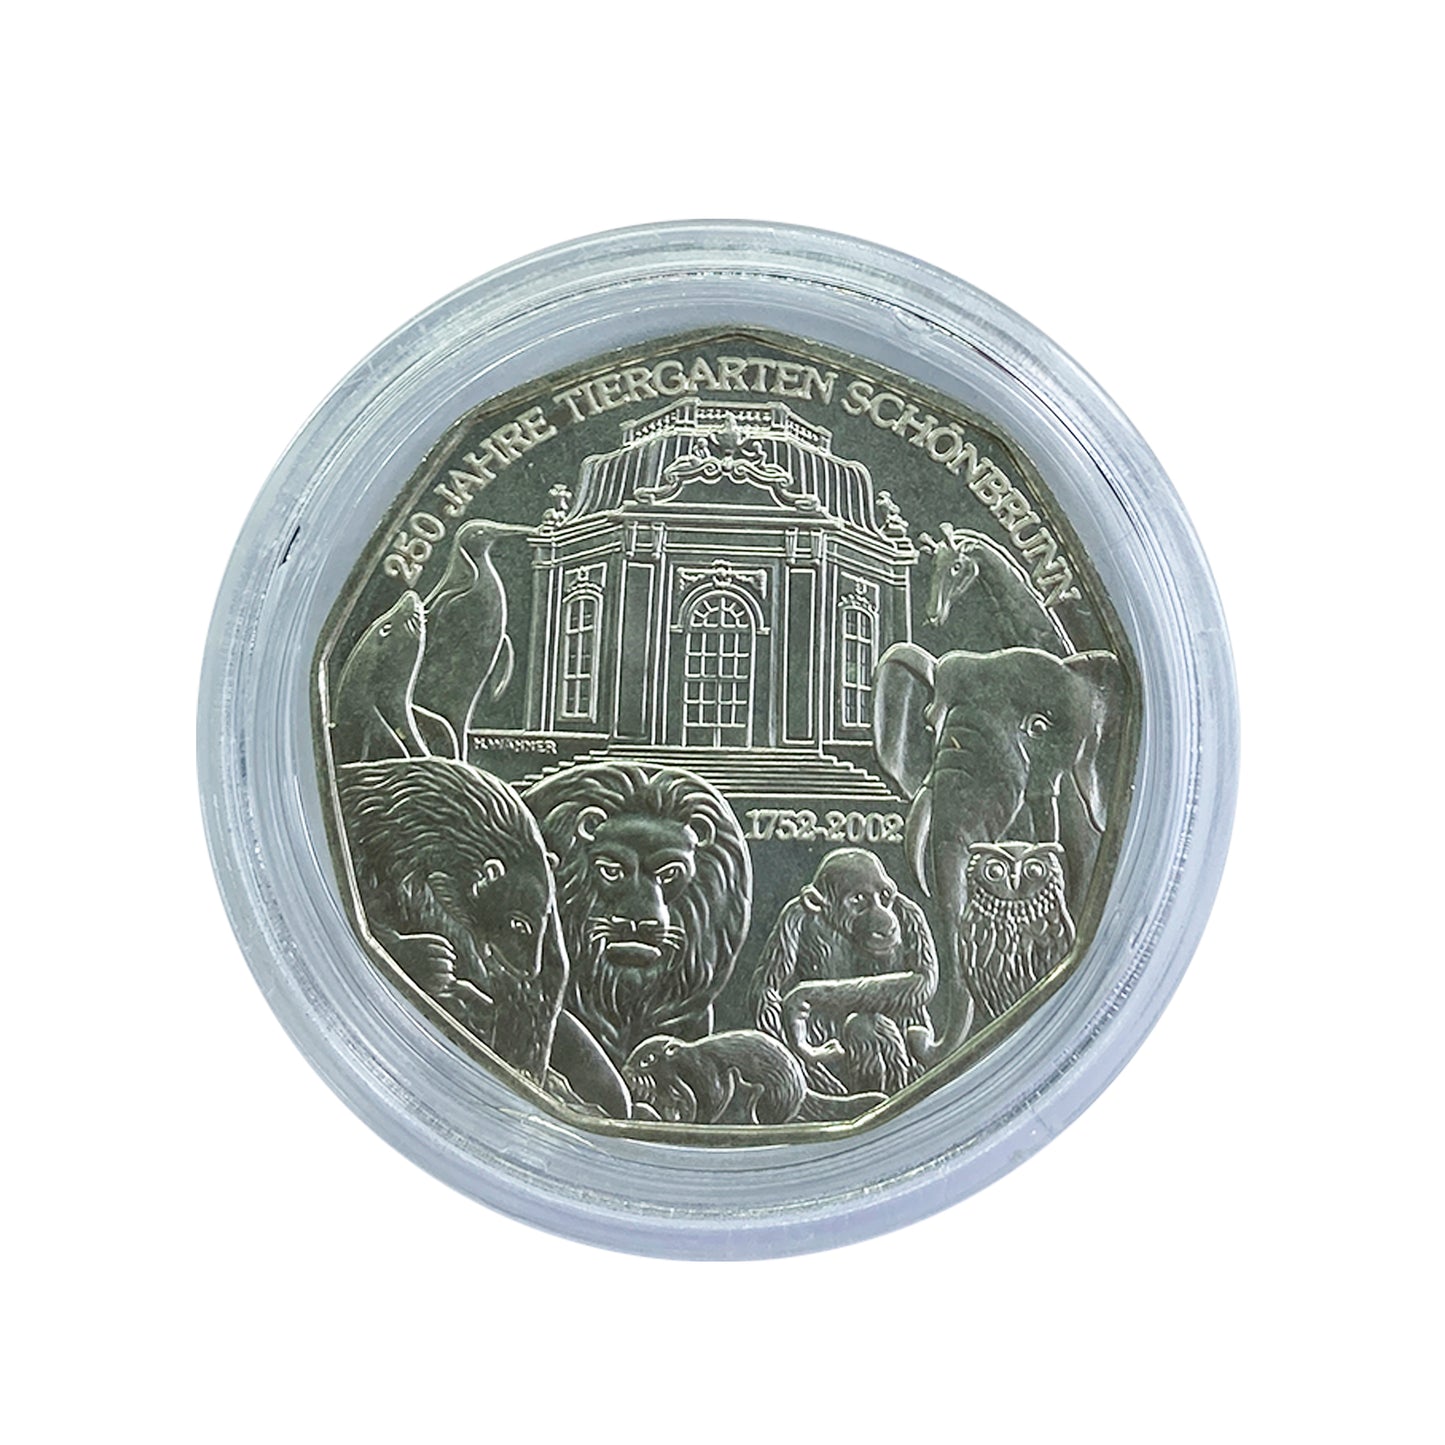 Austria - Moneda 5 euros plata 2002 - 250 Años del Zoológico de Schönbrunn